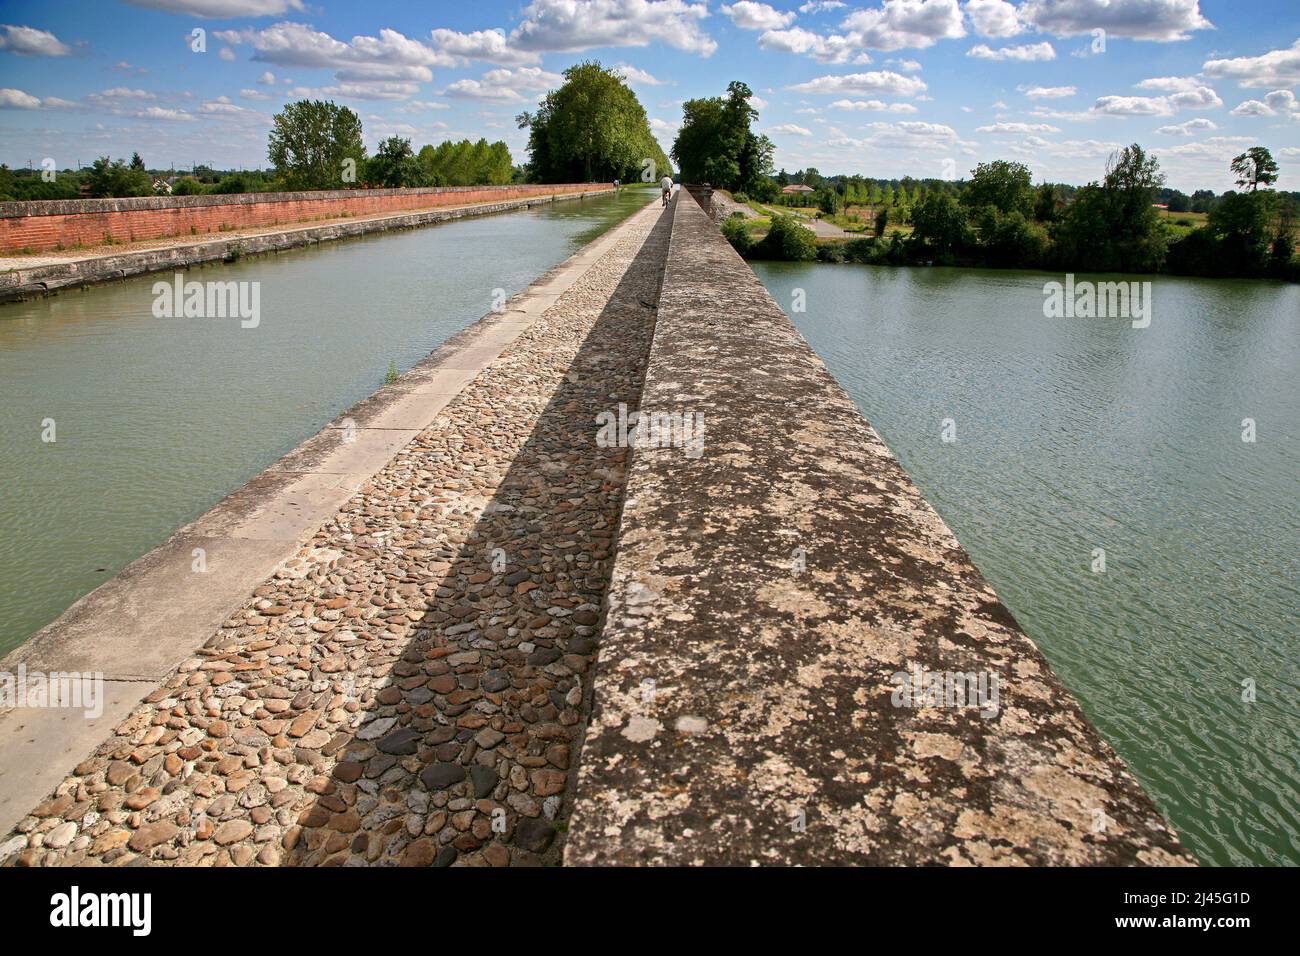 Moissac (sud-ouest de la France) : aqueduc fluvial Òpont-canal du CacorÓ. Pont d'eau entre la Garonne et le Tarn Banque D'Images